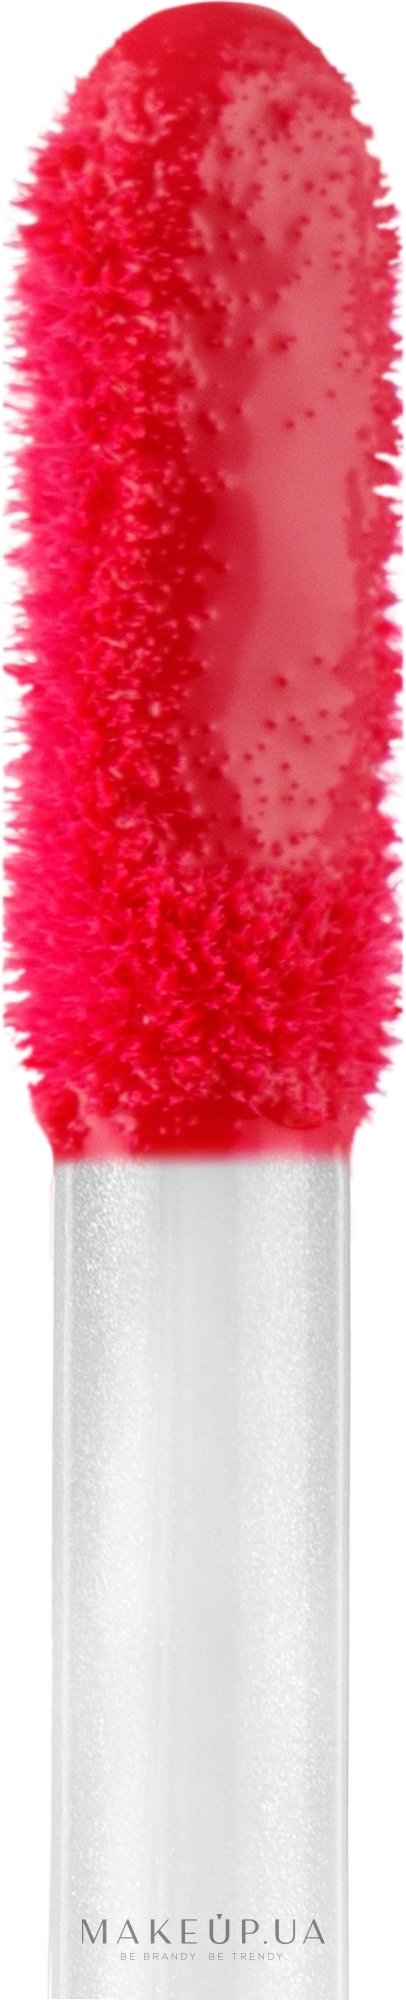 Liquid Lipstick - Quiss Latex Shine — фото 02 - Hot Berry